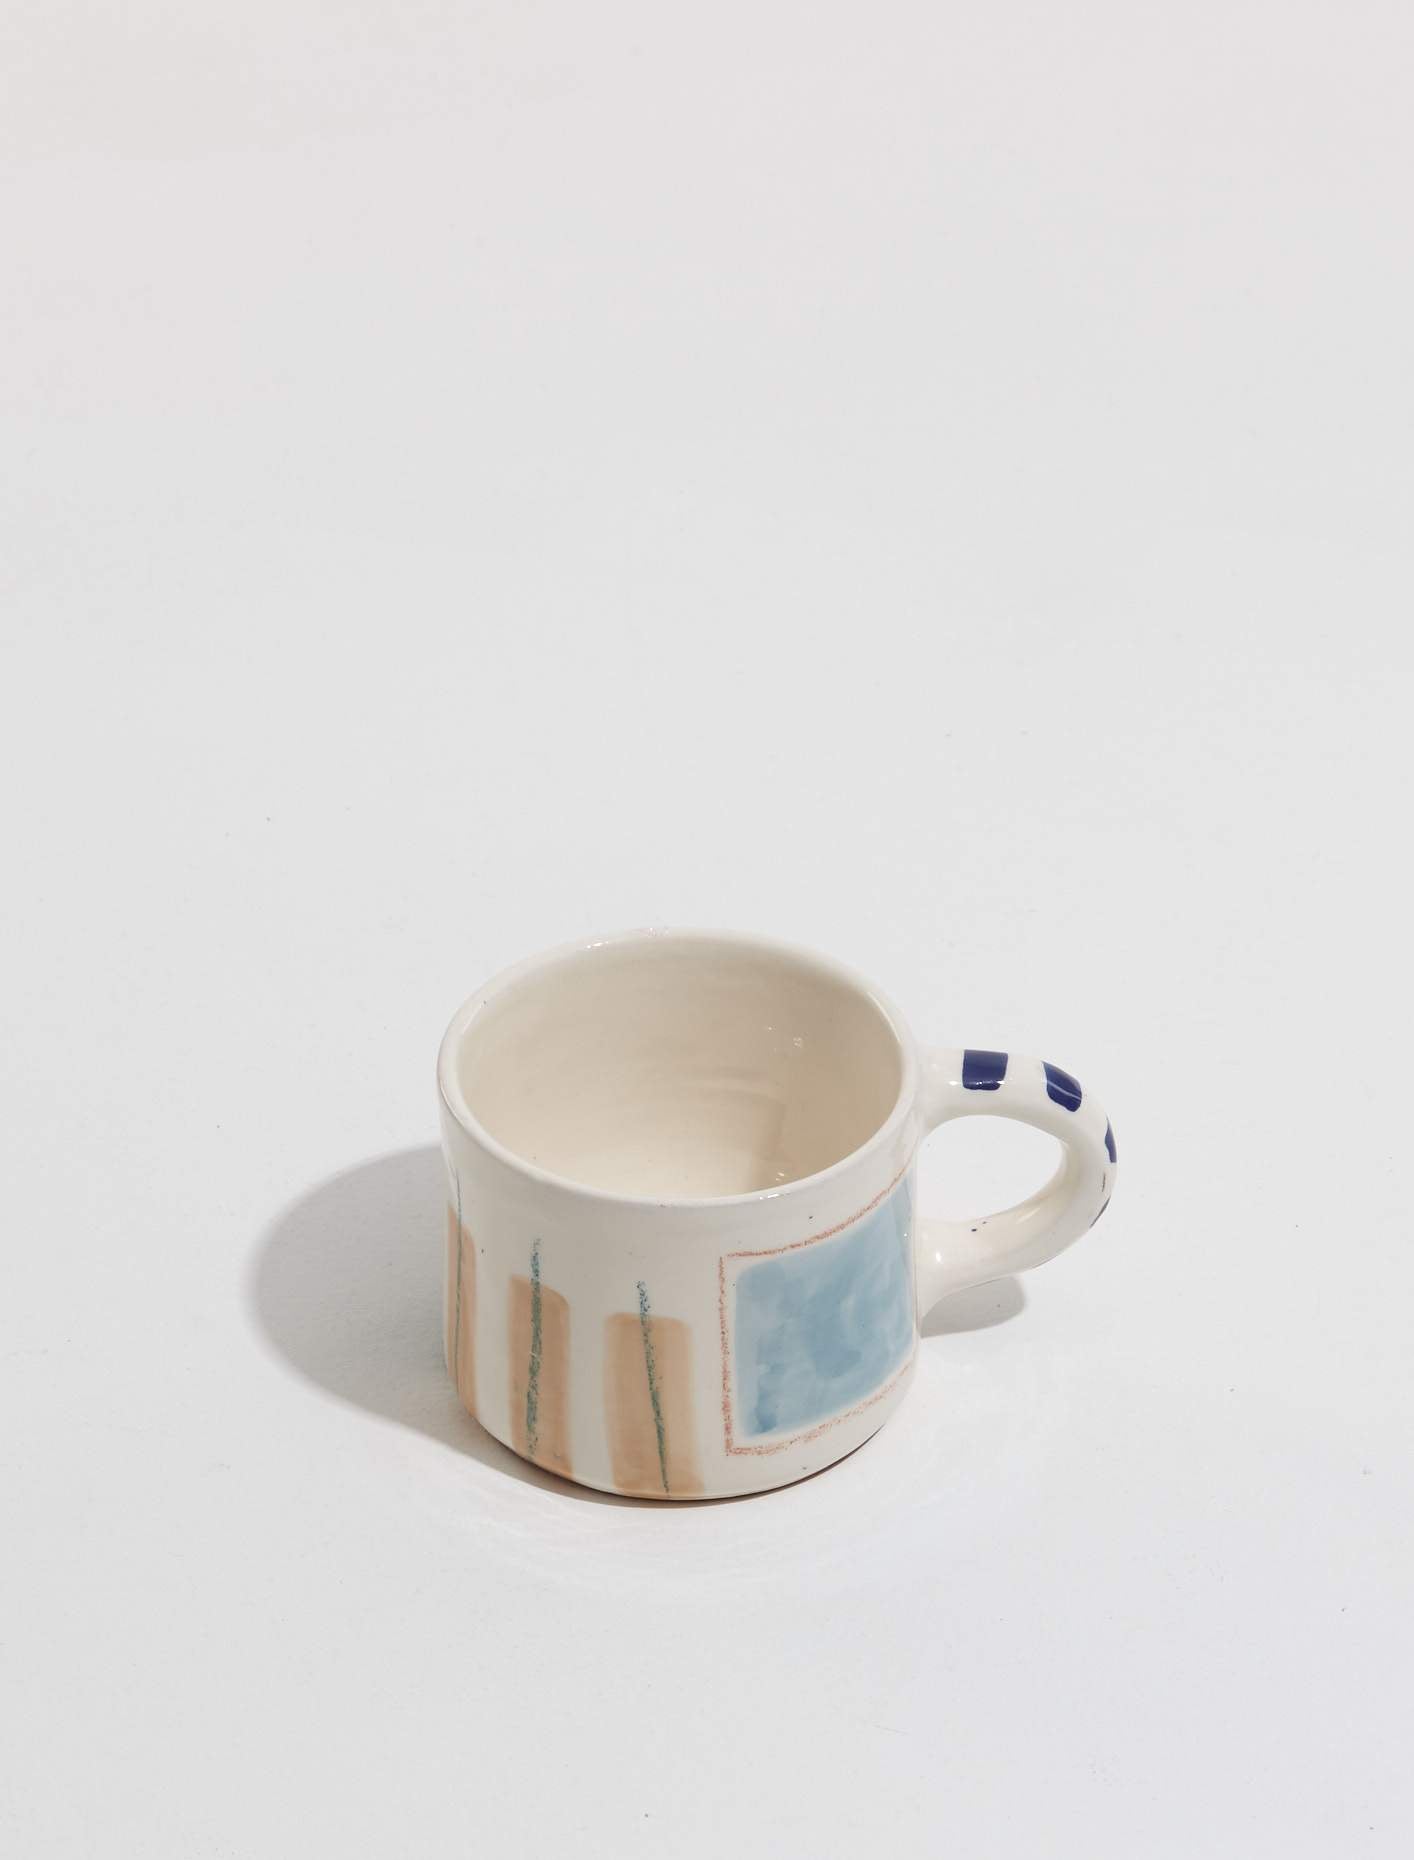 Handpainted Mug "Love Mug Blue Window"